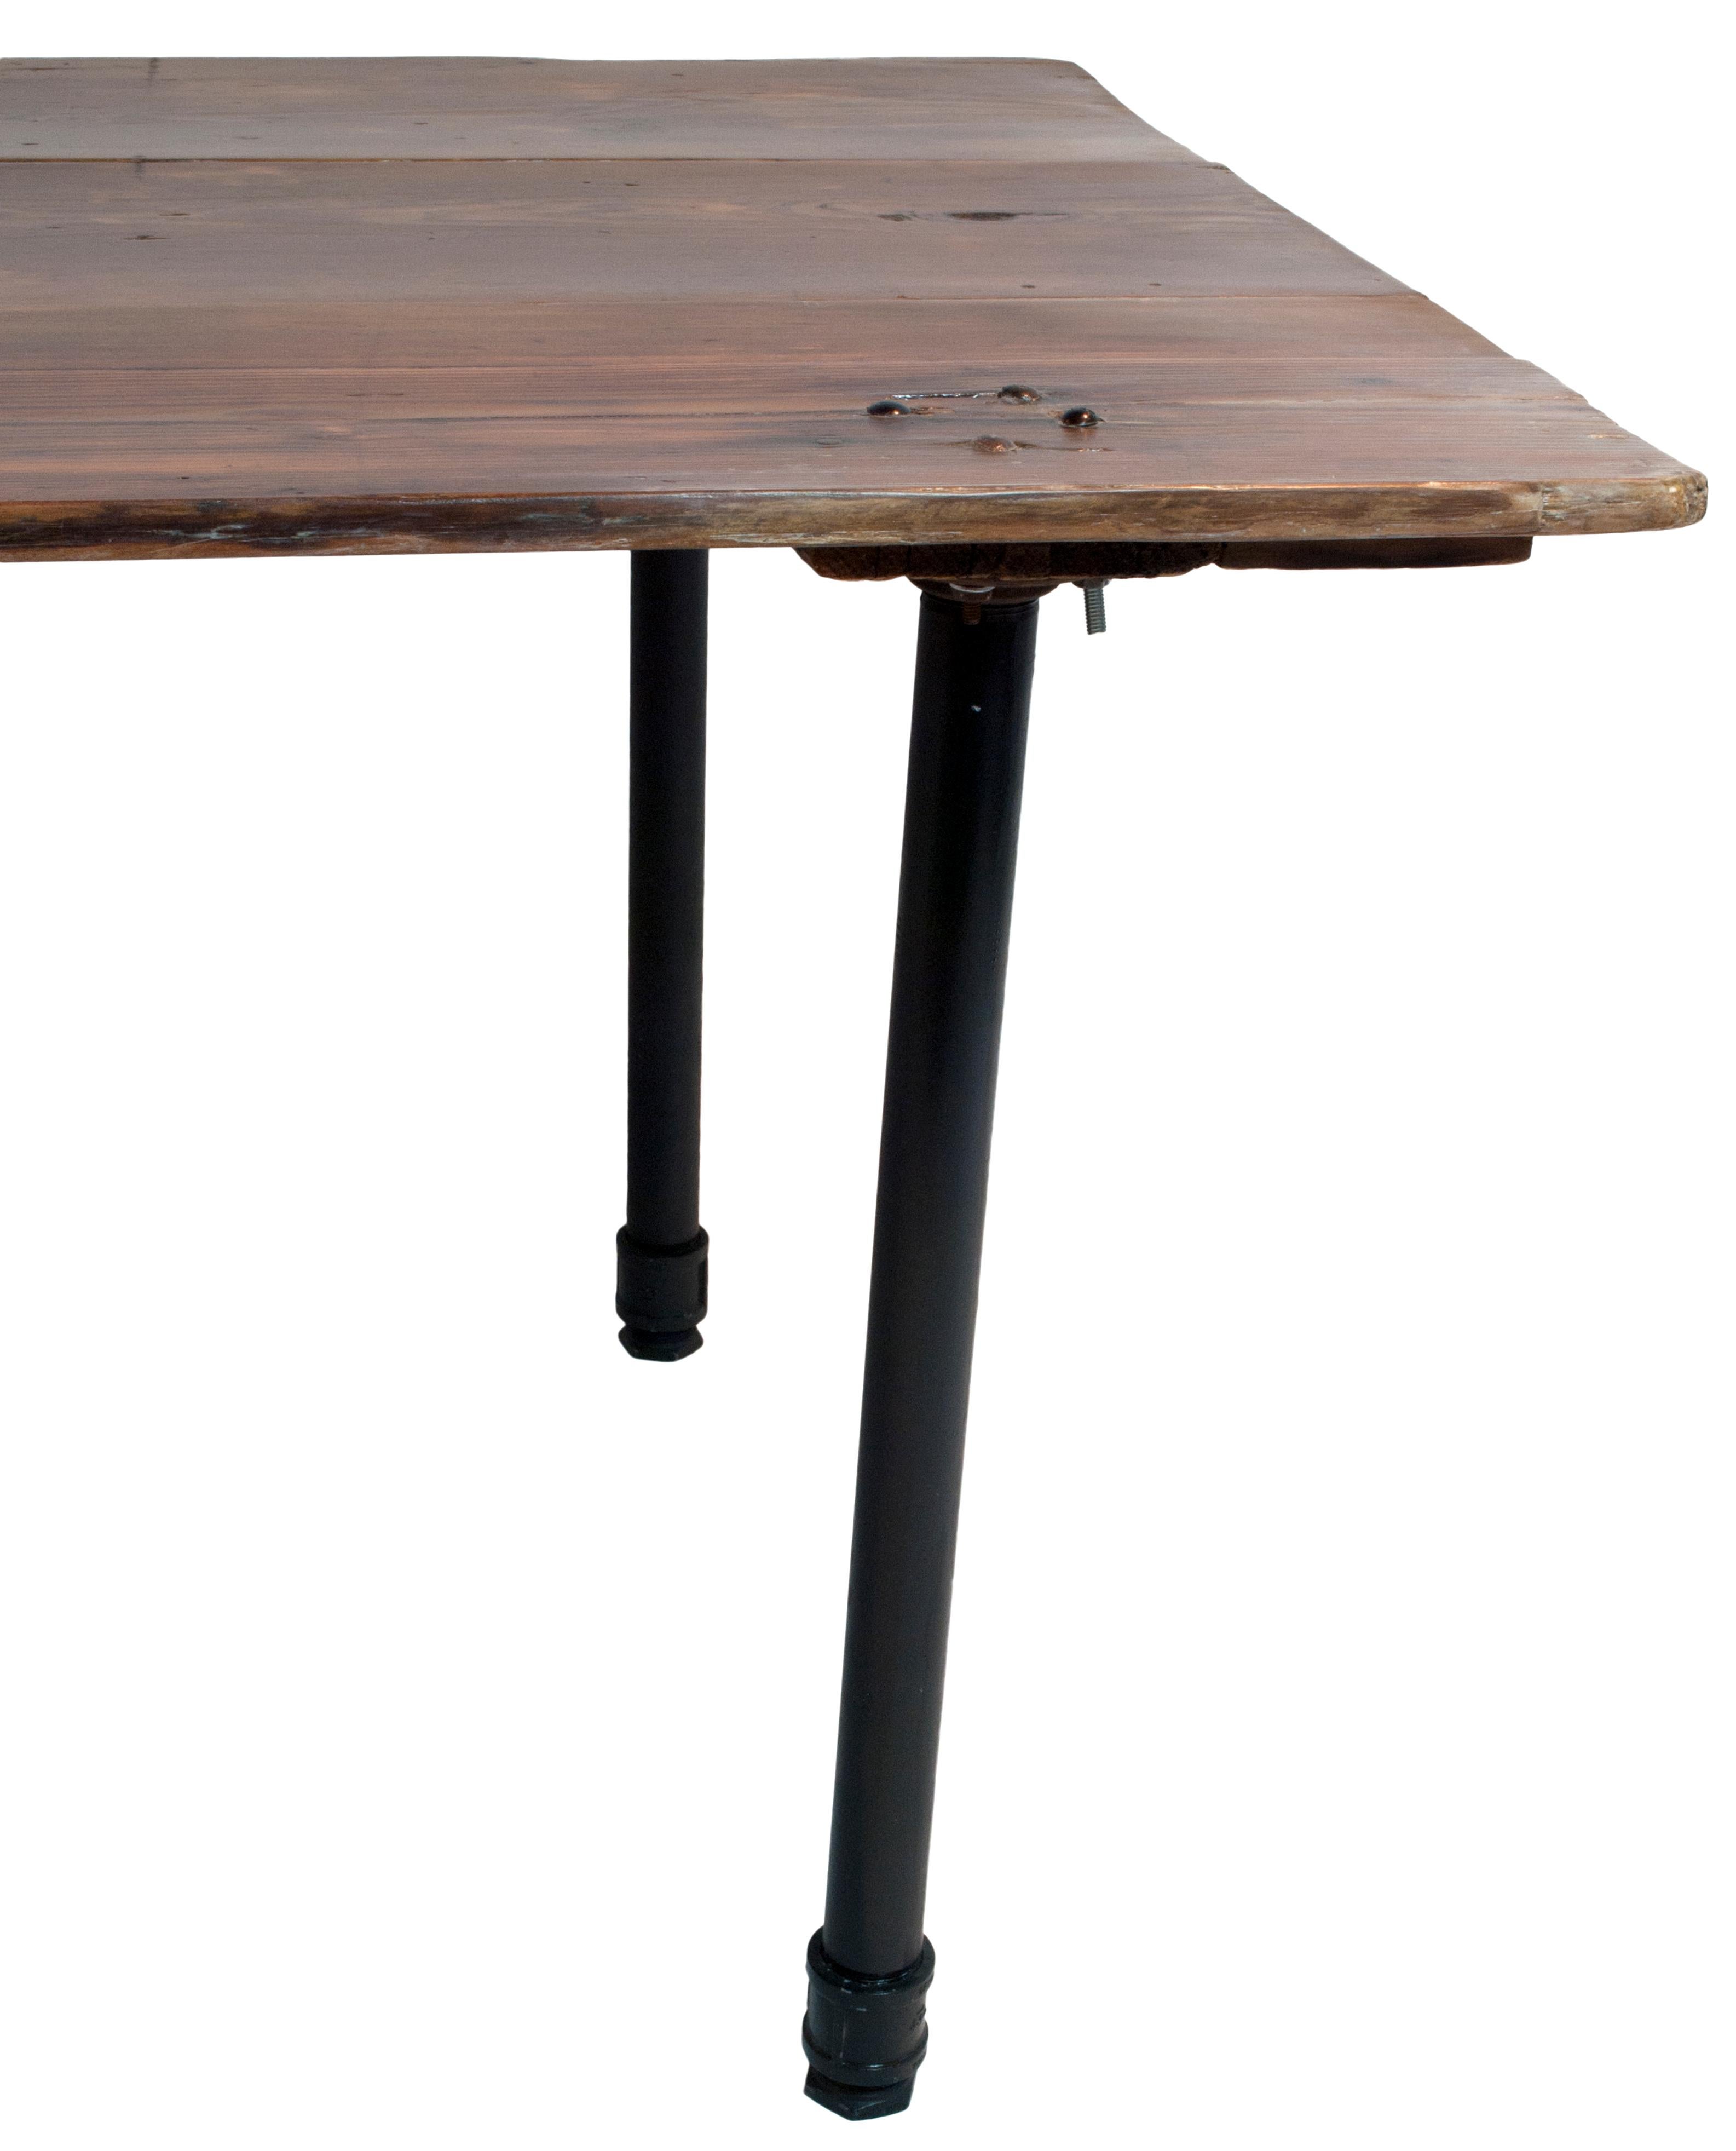 North American Vintage Reclaimed Wood Plank Table on Industrial Metal Legs